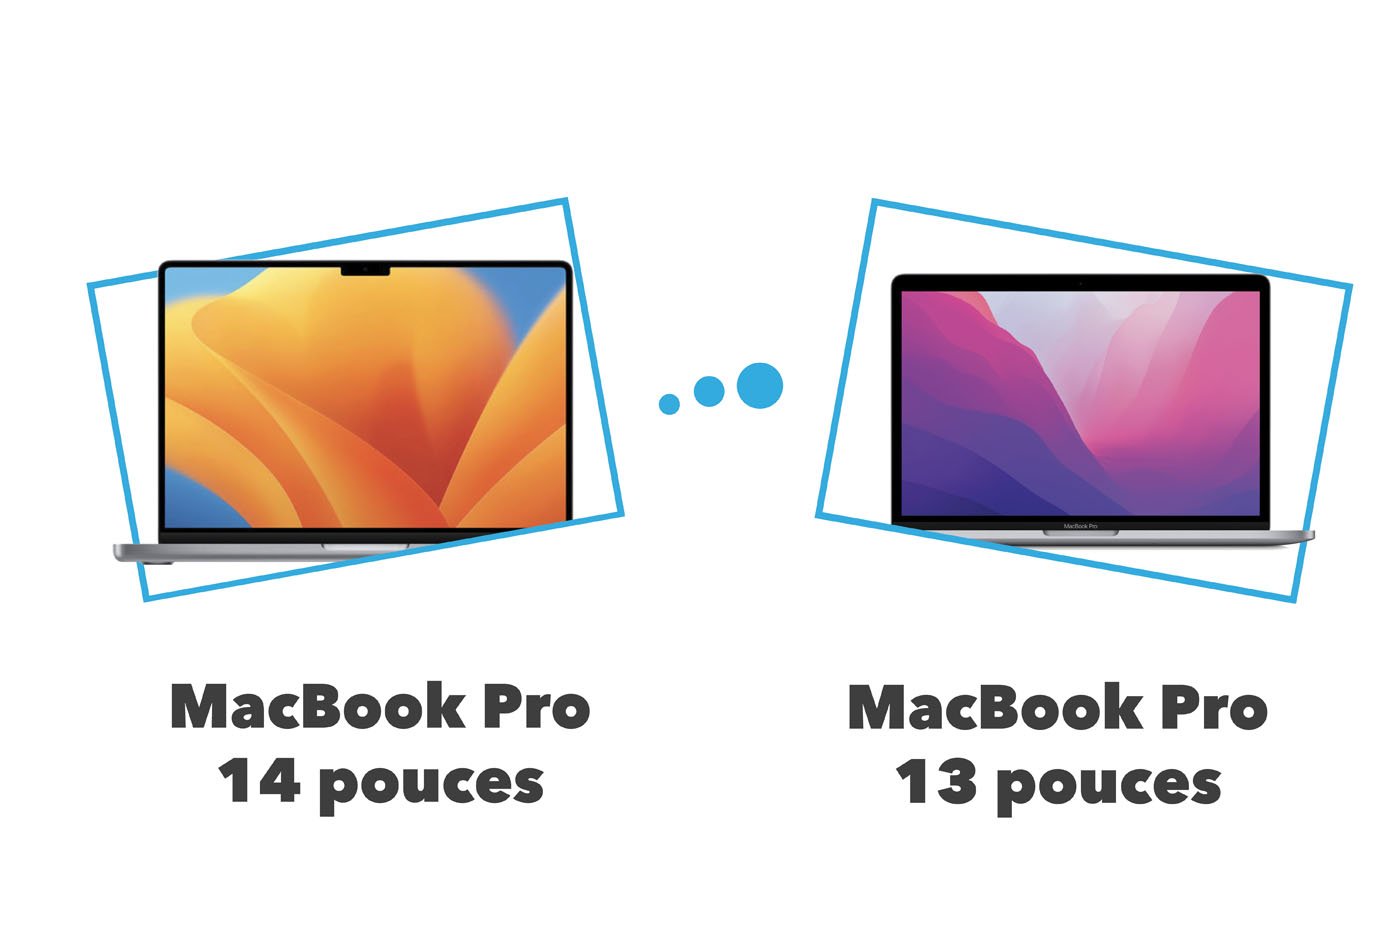 MacBook Pro 14 VS 13 pouces